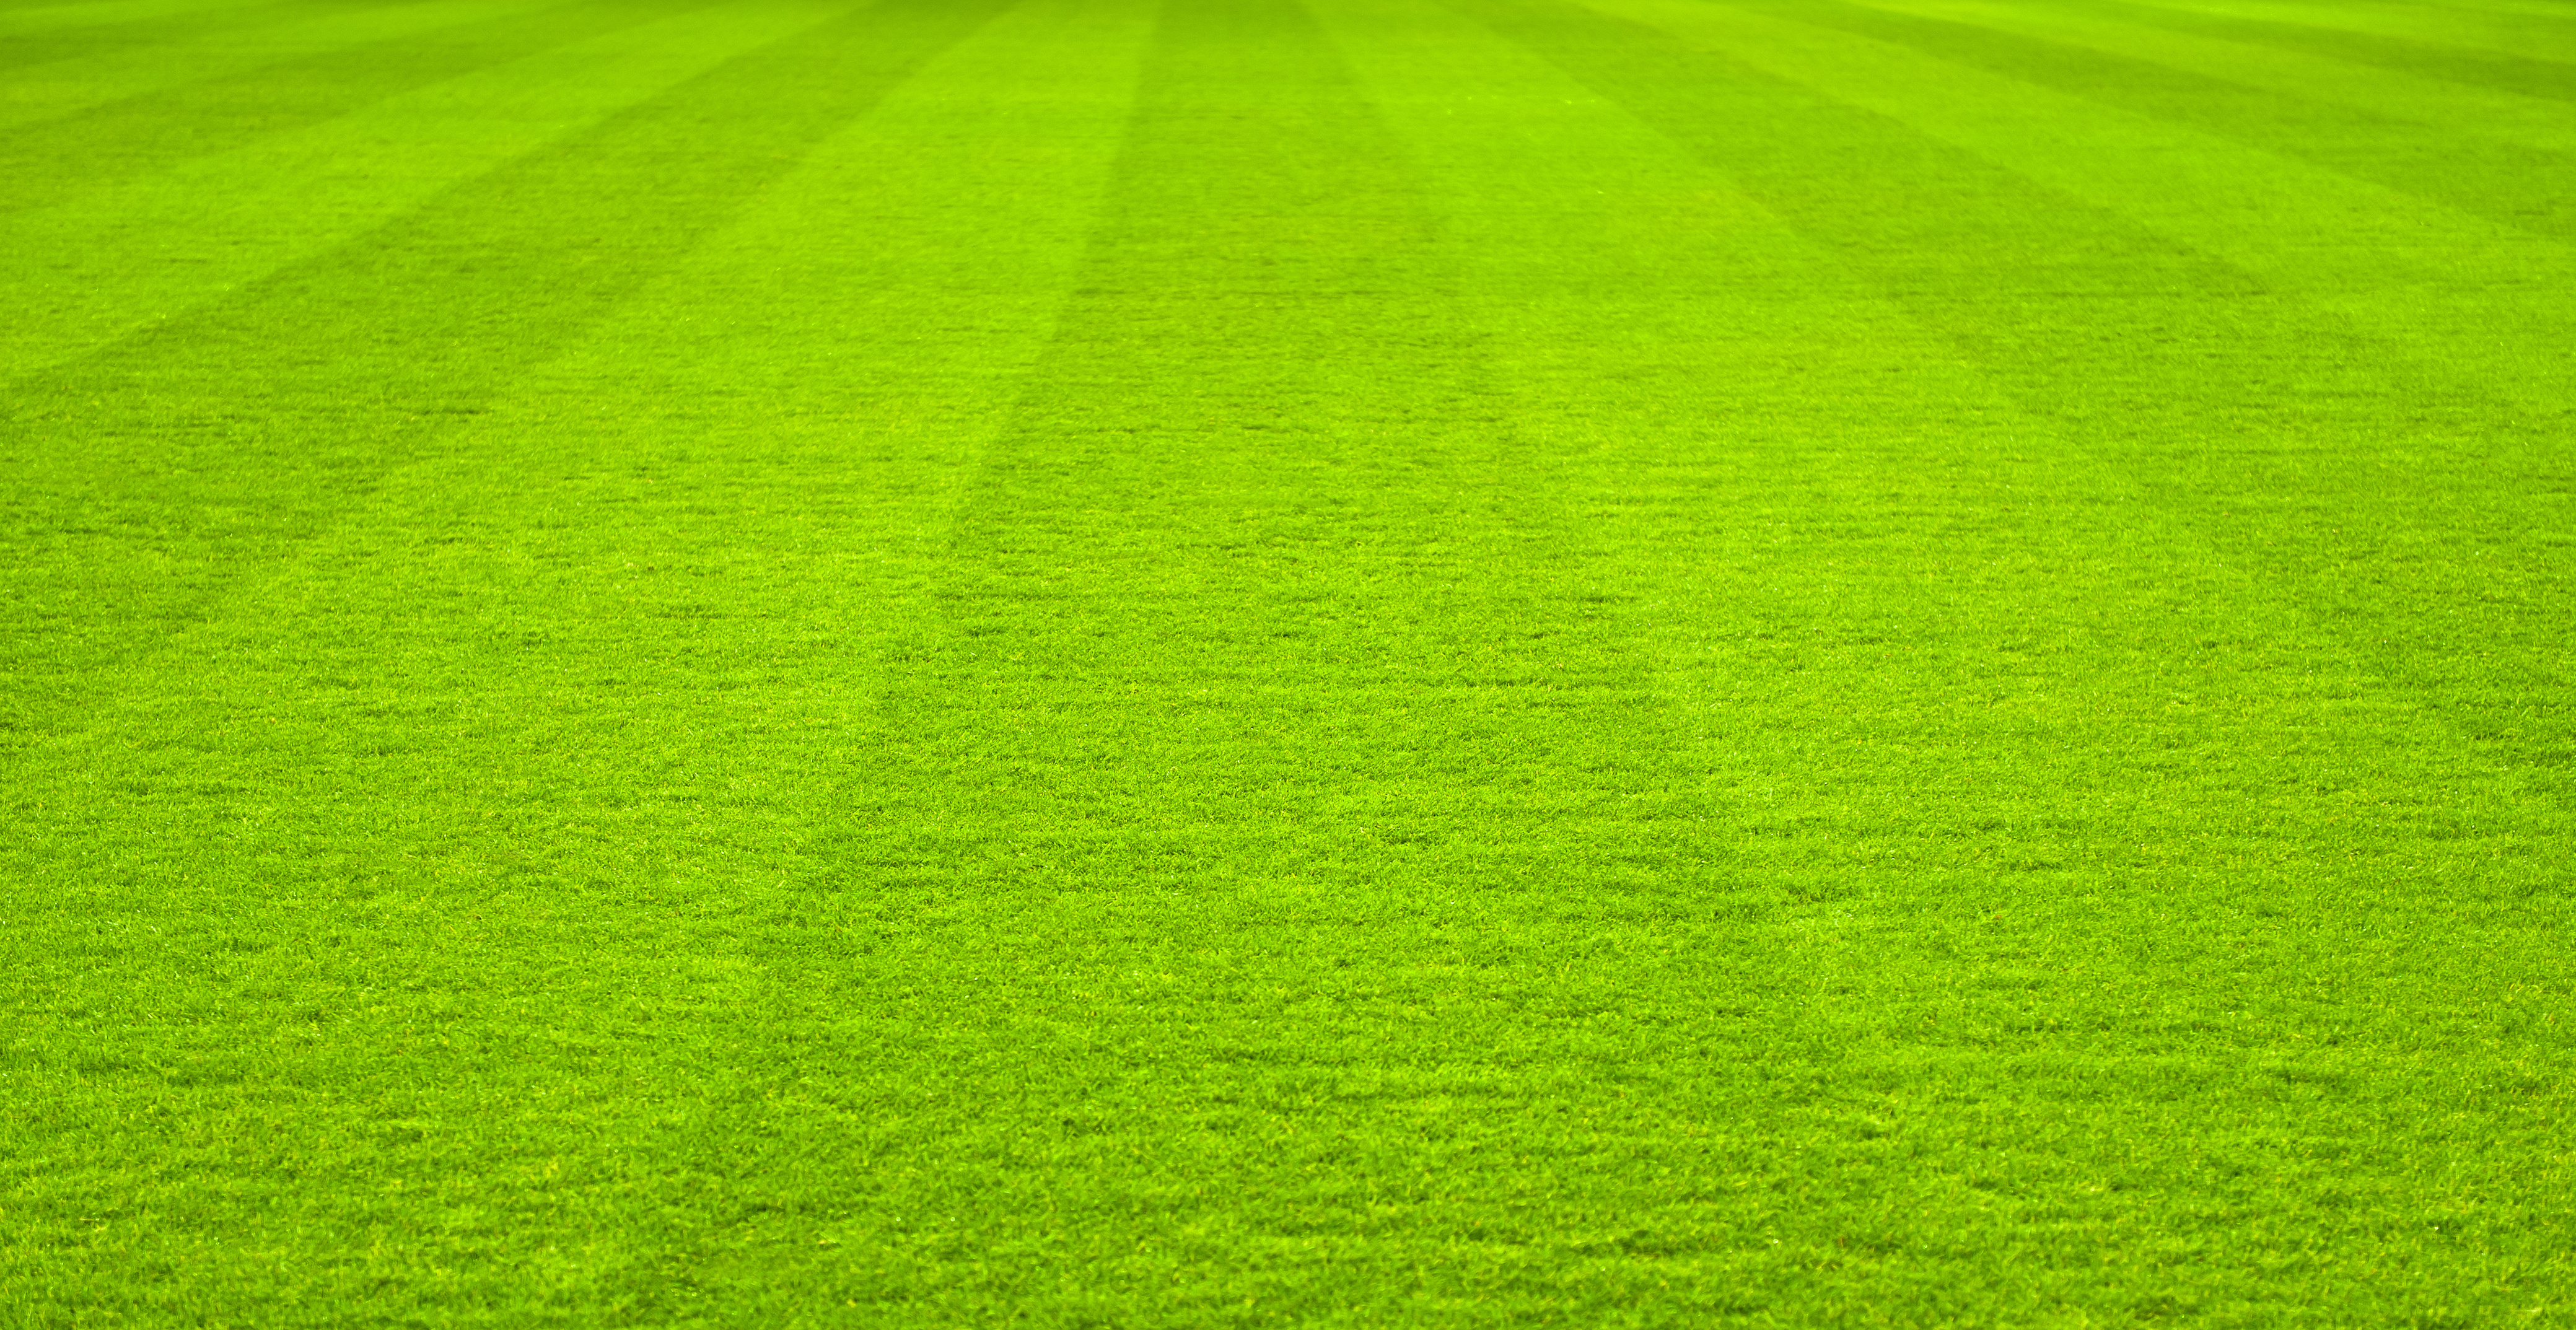 Green Grass soccer field